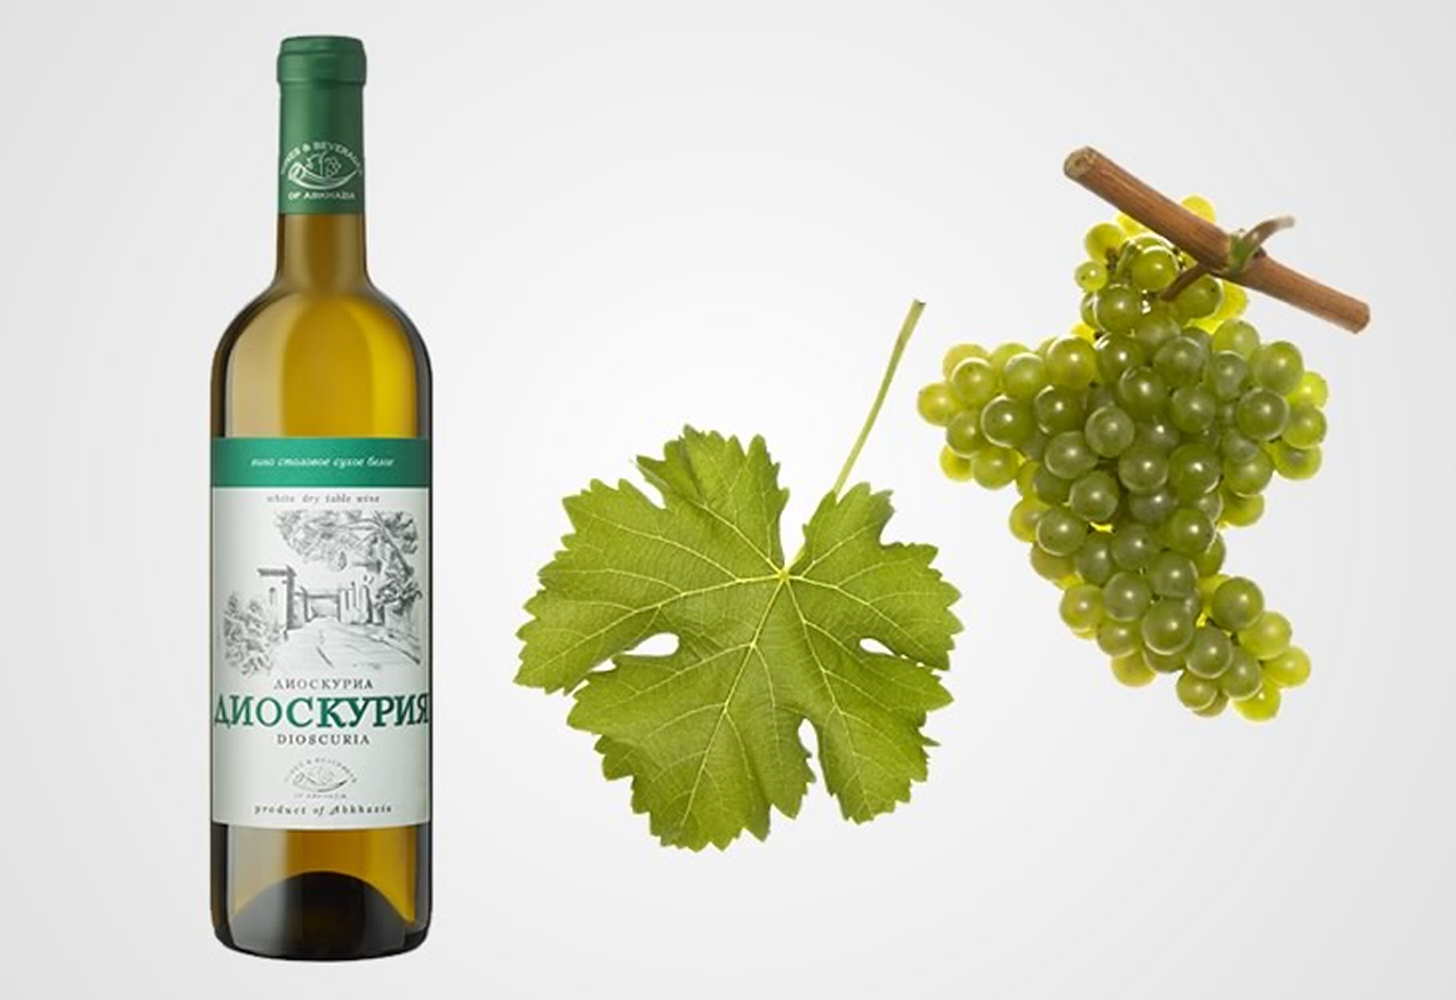 Апсны — знаменитое абхазское вино